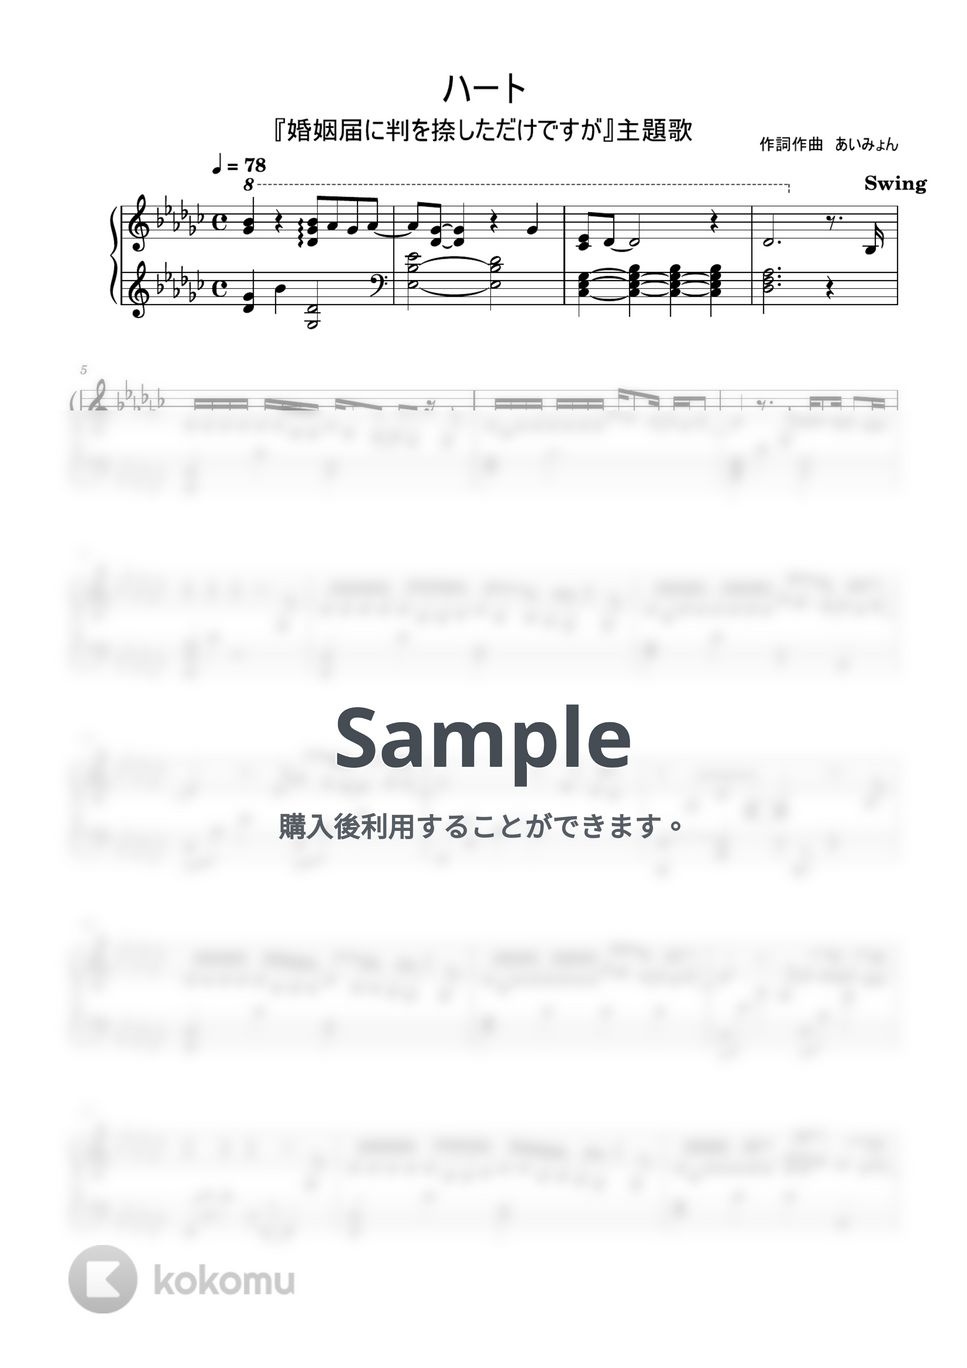 あいみょん - ハート (ピアノソロ) by MIKA